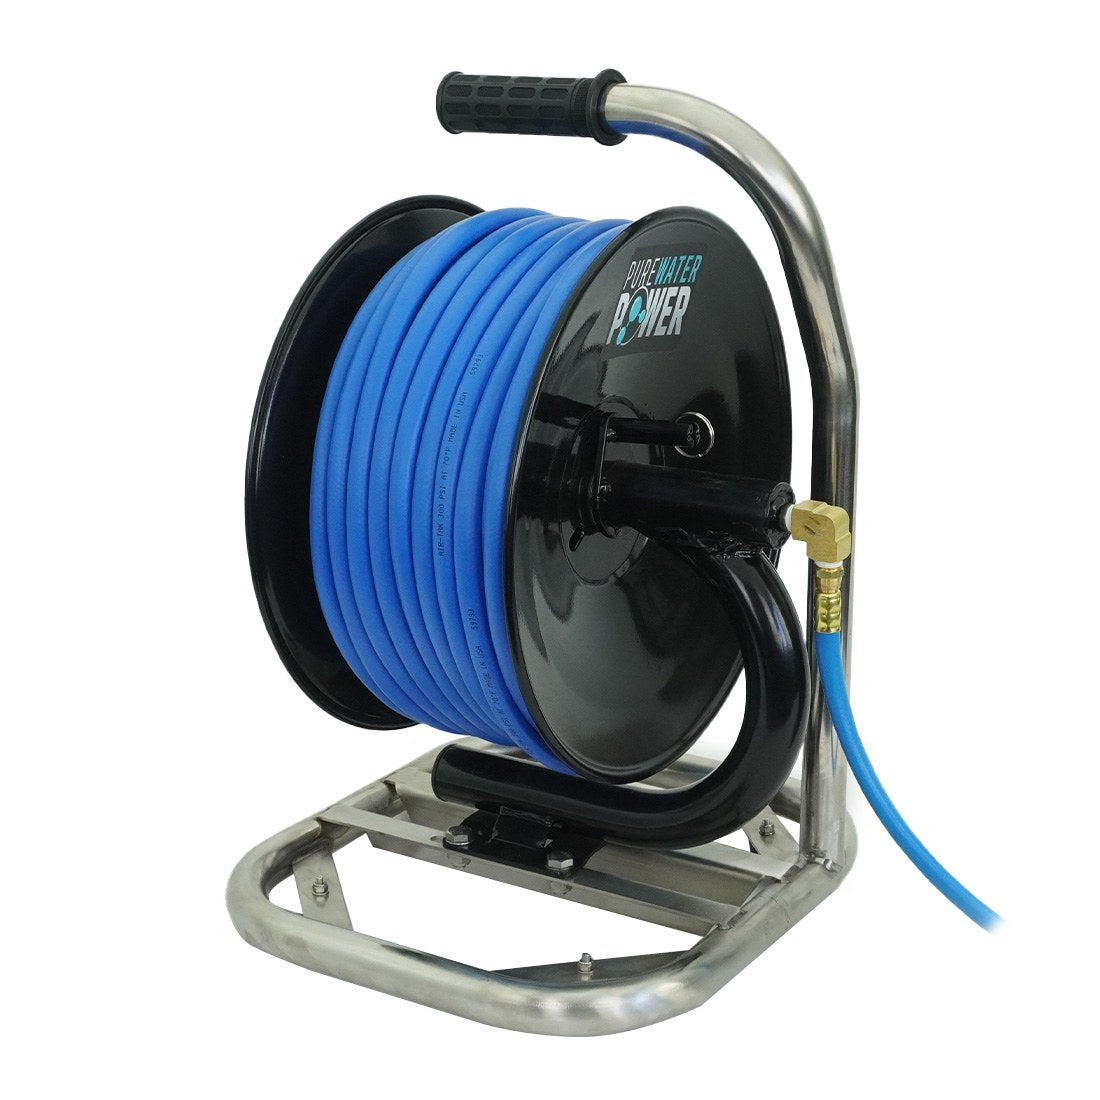 Wholesale 150 ft water hose reel-Buy Best 150 ft water hose reel